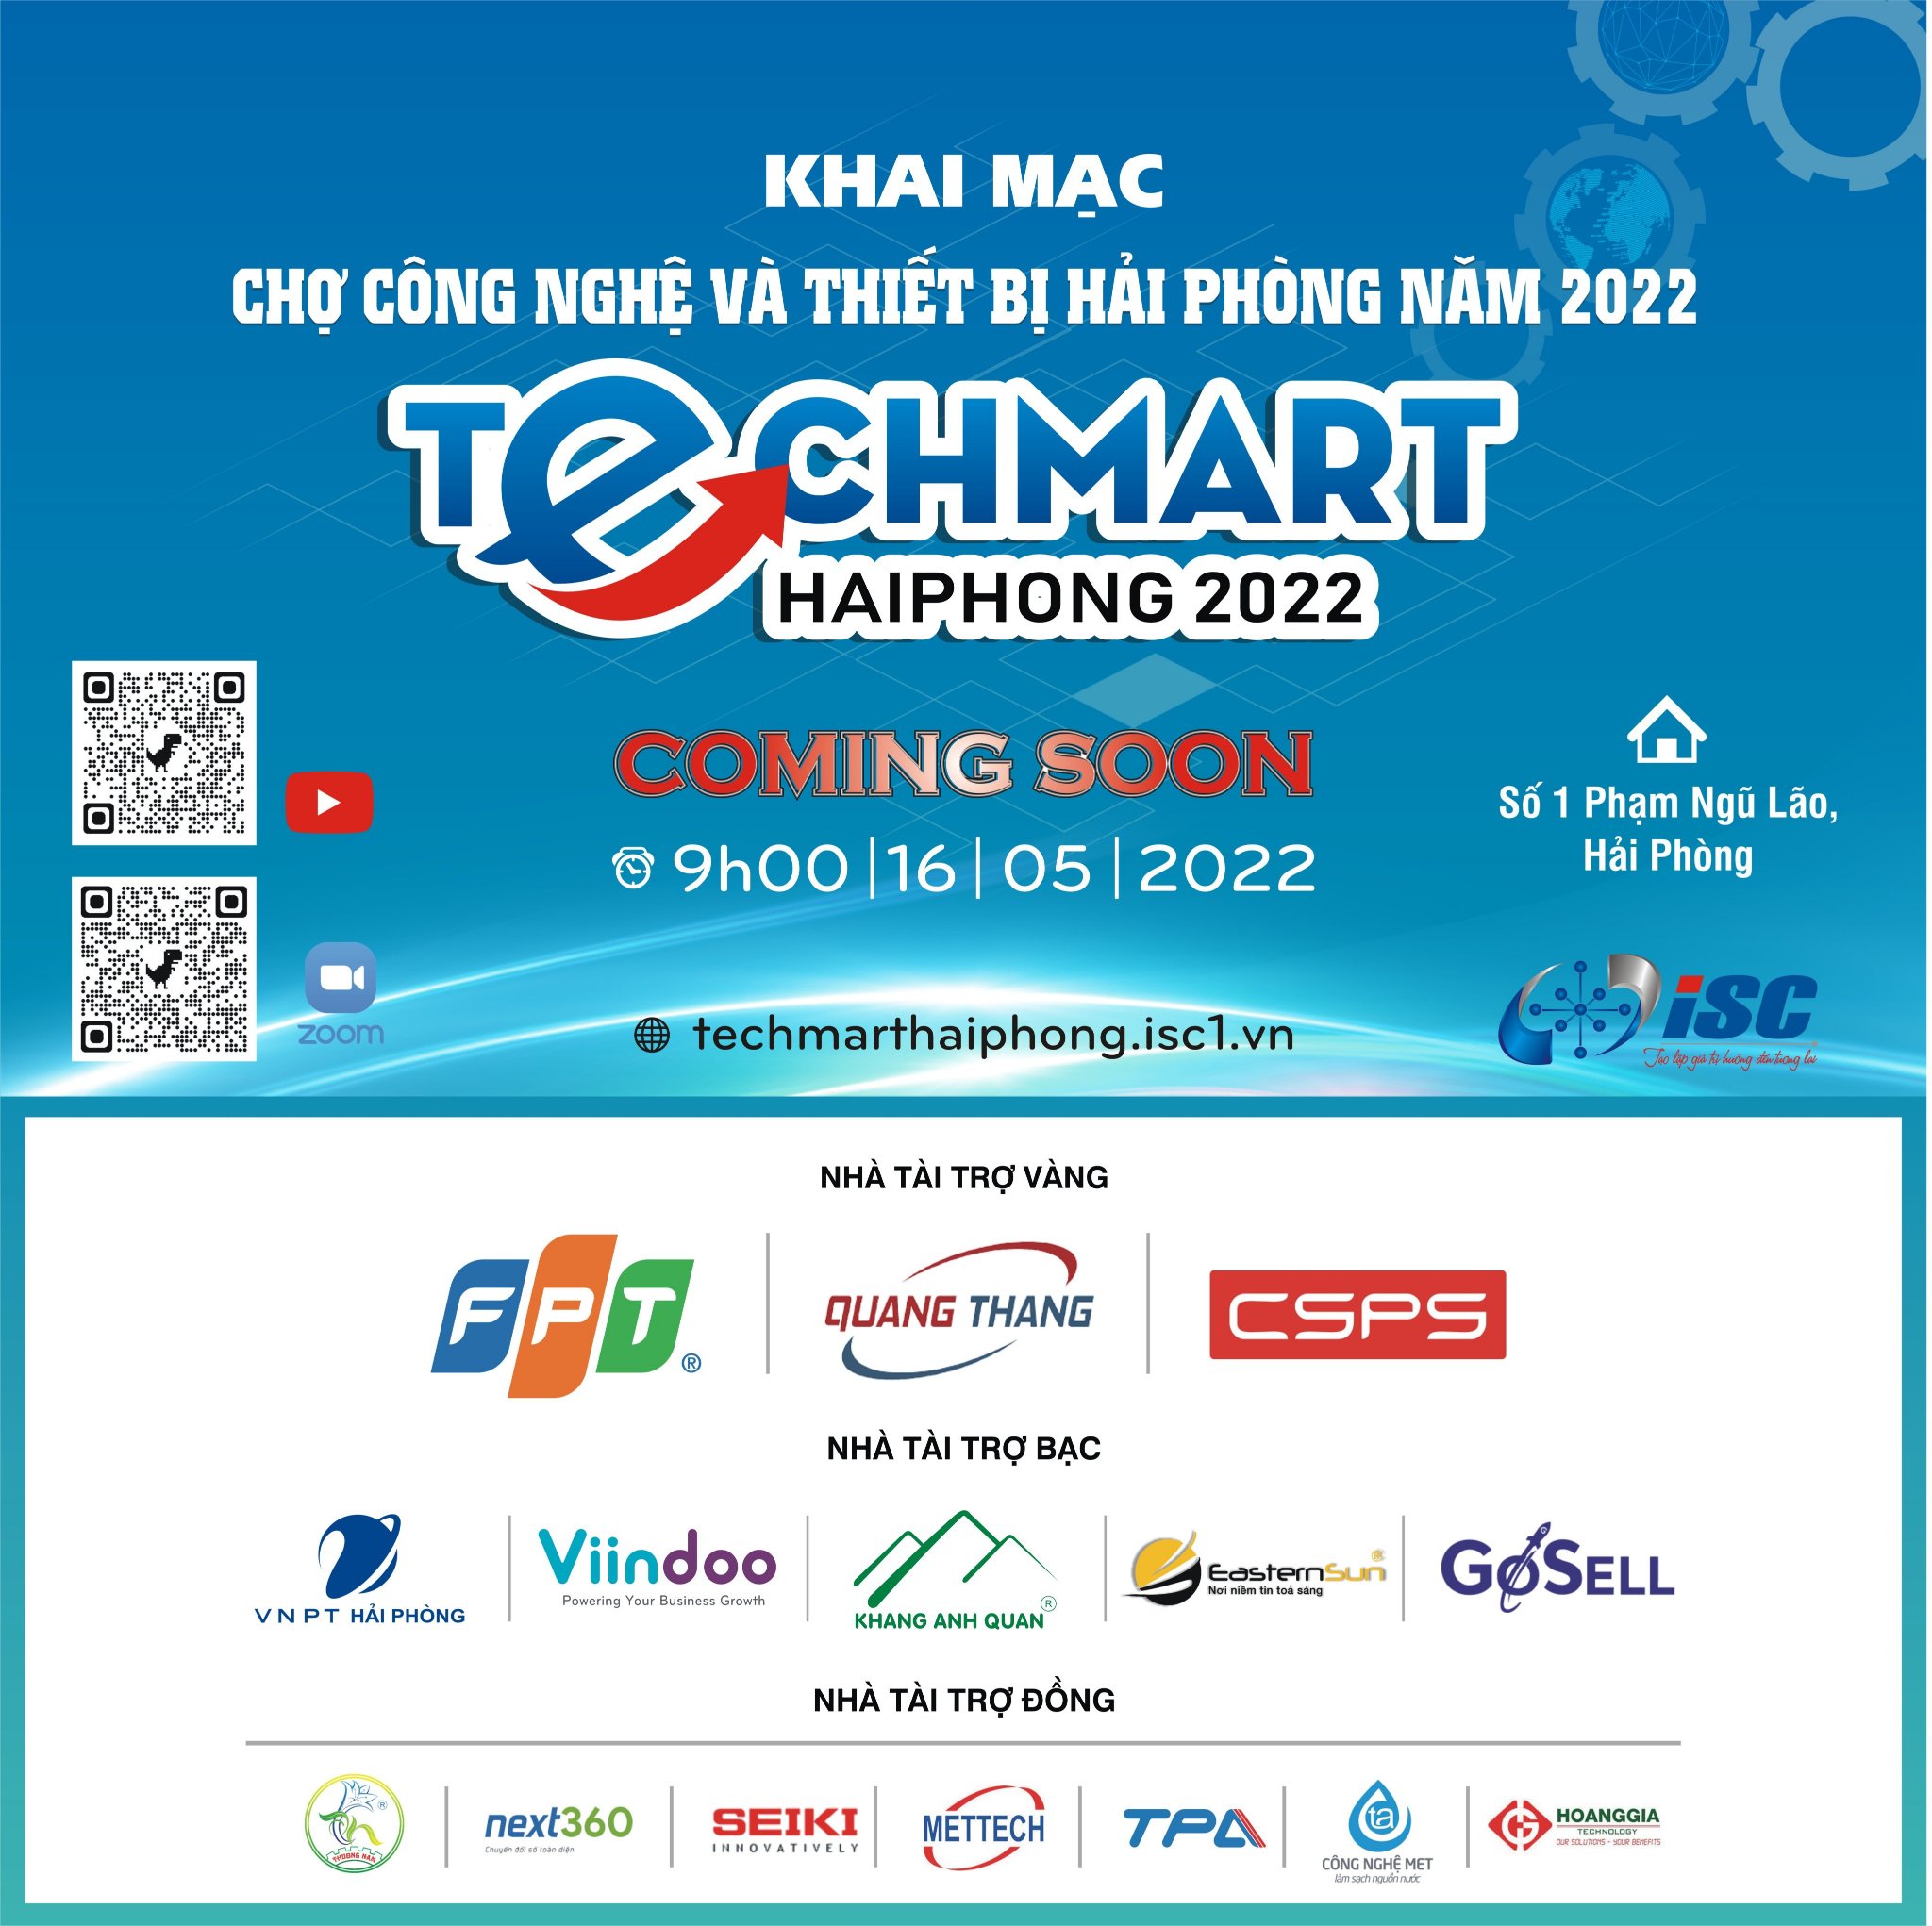 Khai mạc Techmart Haiphong 2022